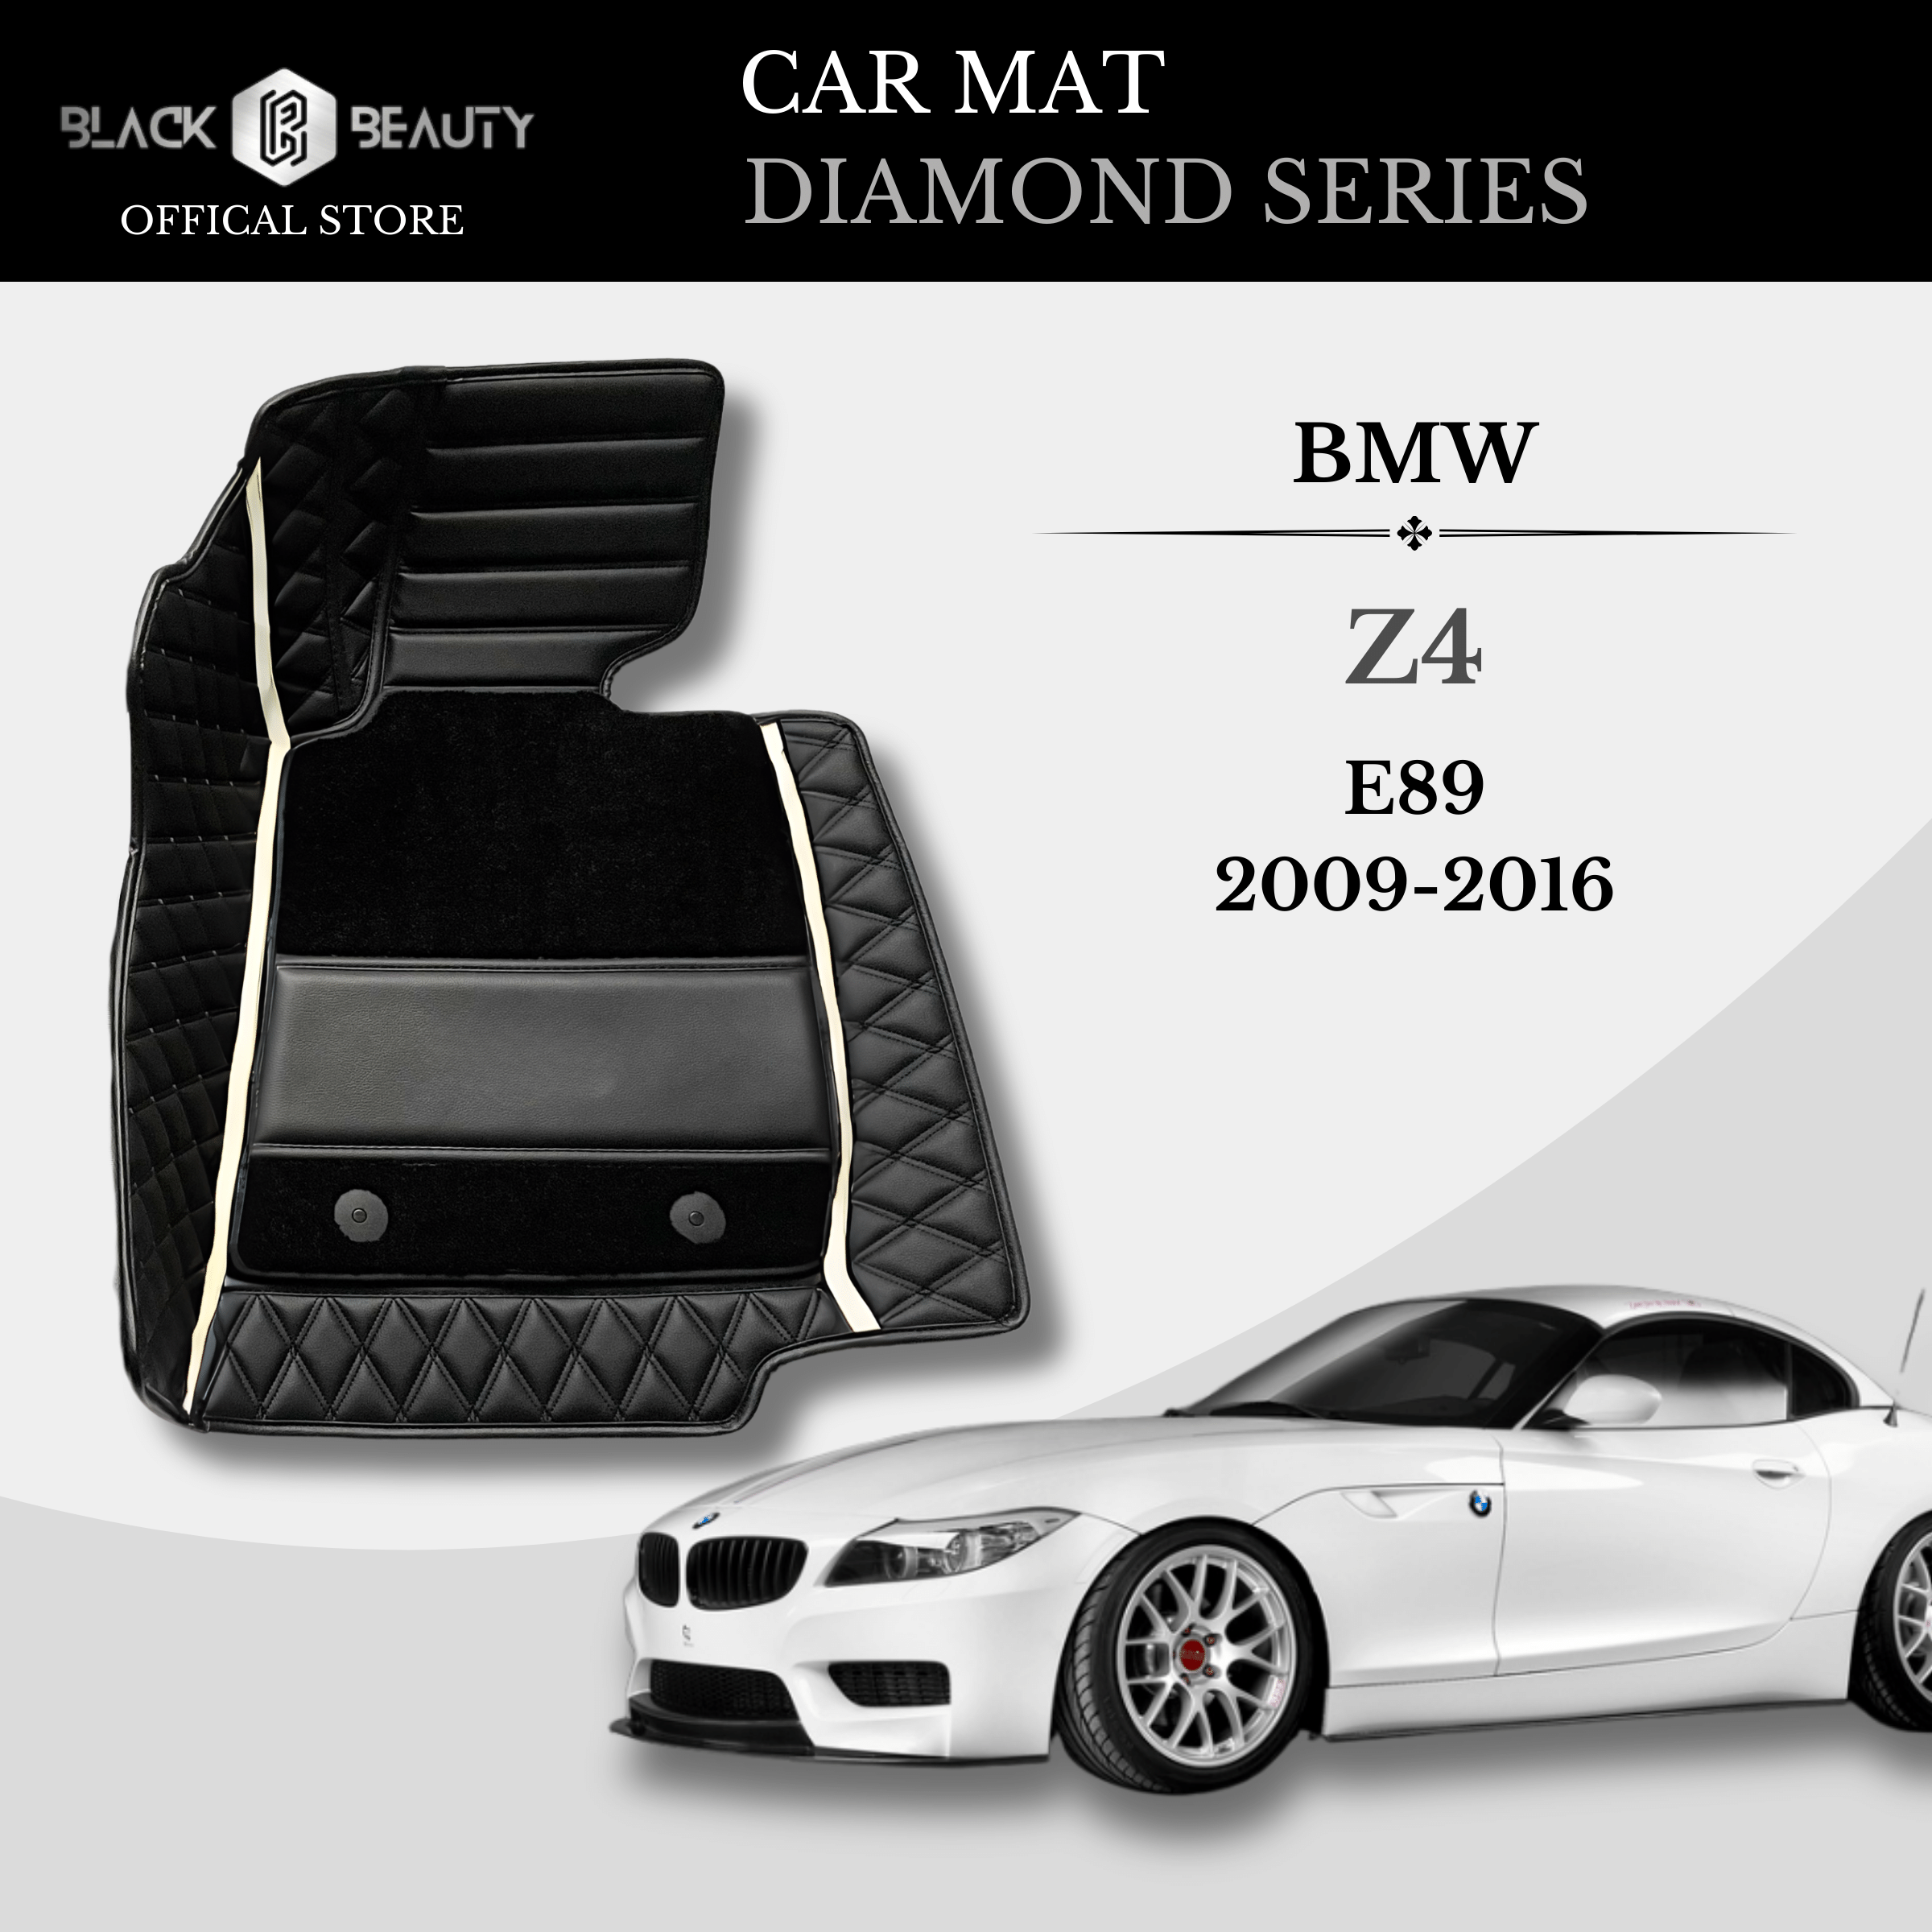 BMW Z4 E89 (2009-2016) - Diamond Series Car Mat